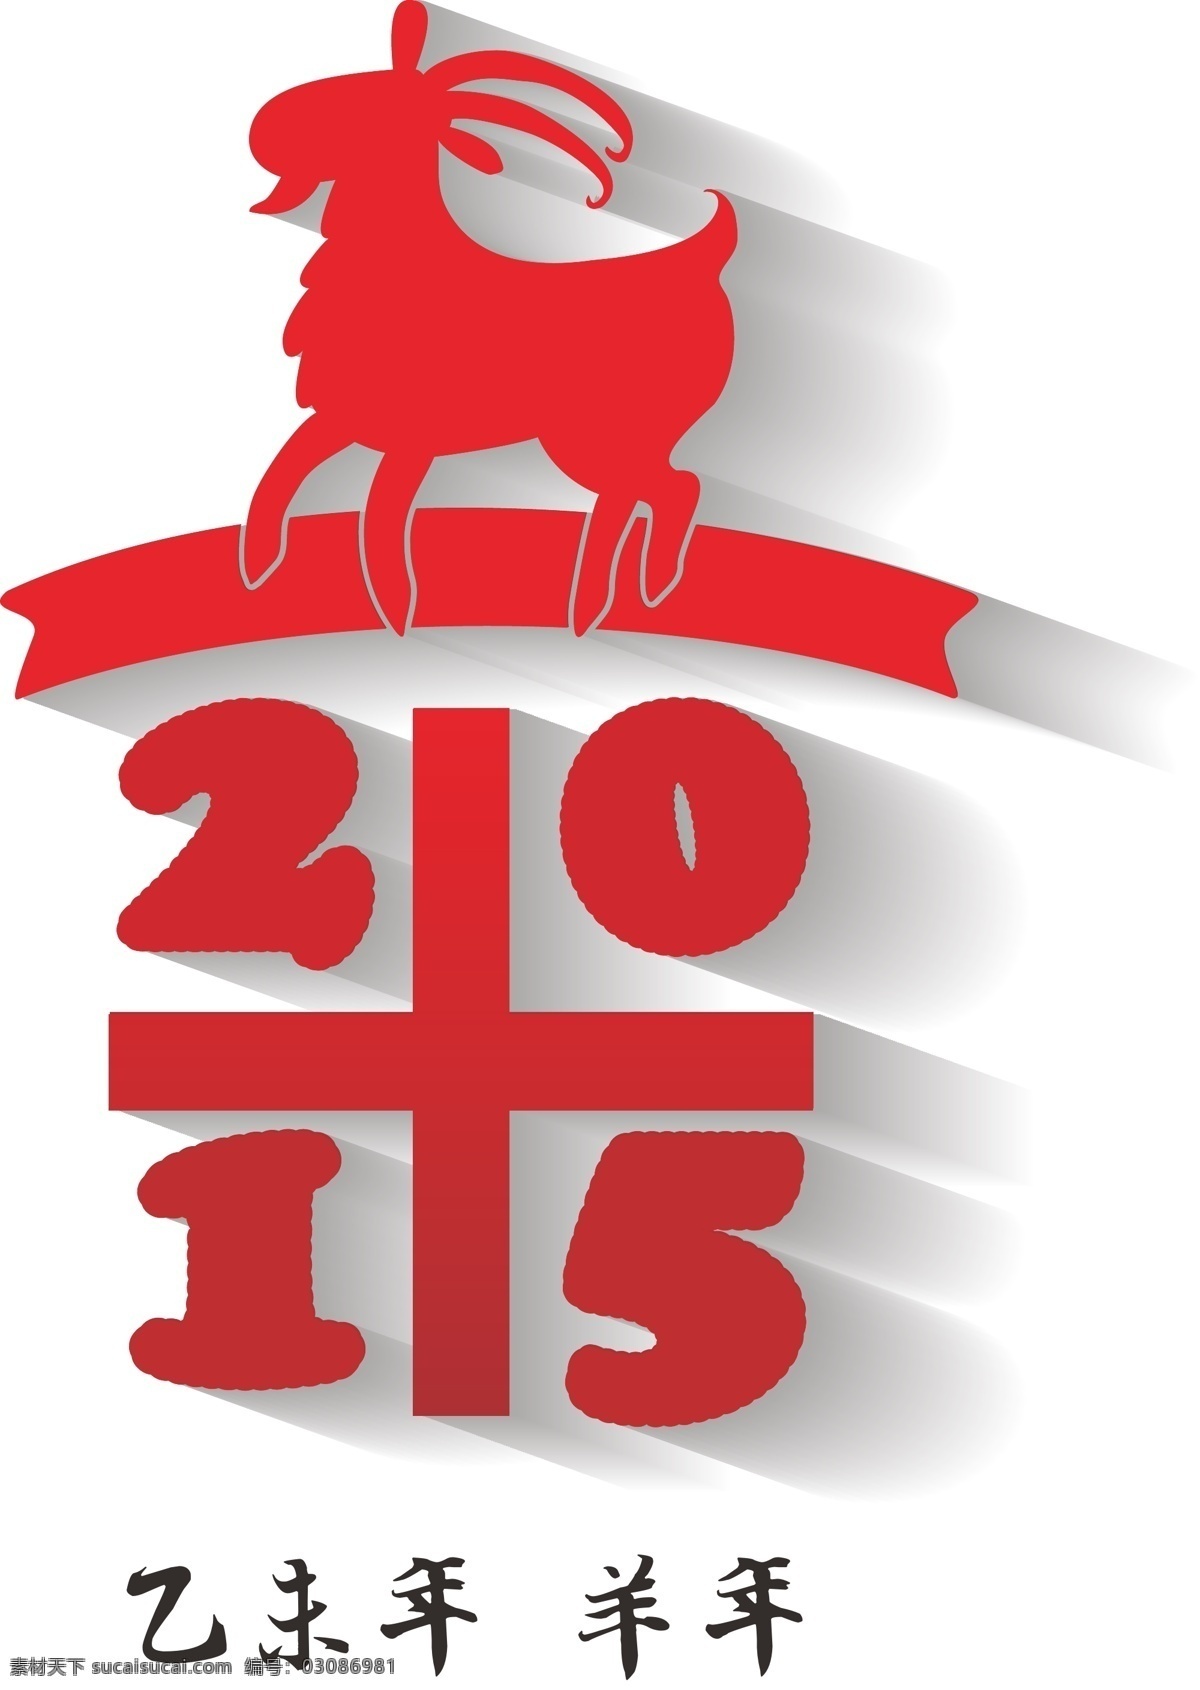 2015 羊年 卡通 标题 红色 小羊 日历标题 节日素材 新年 元旦 春节 元宵